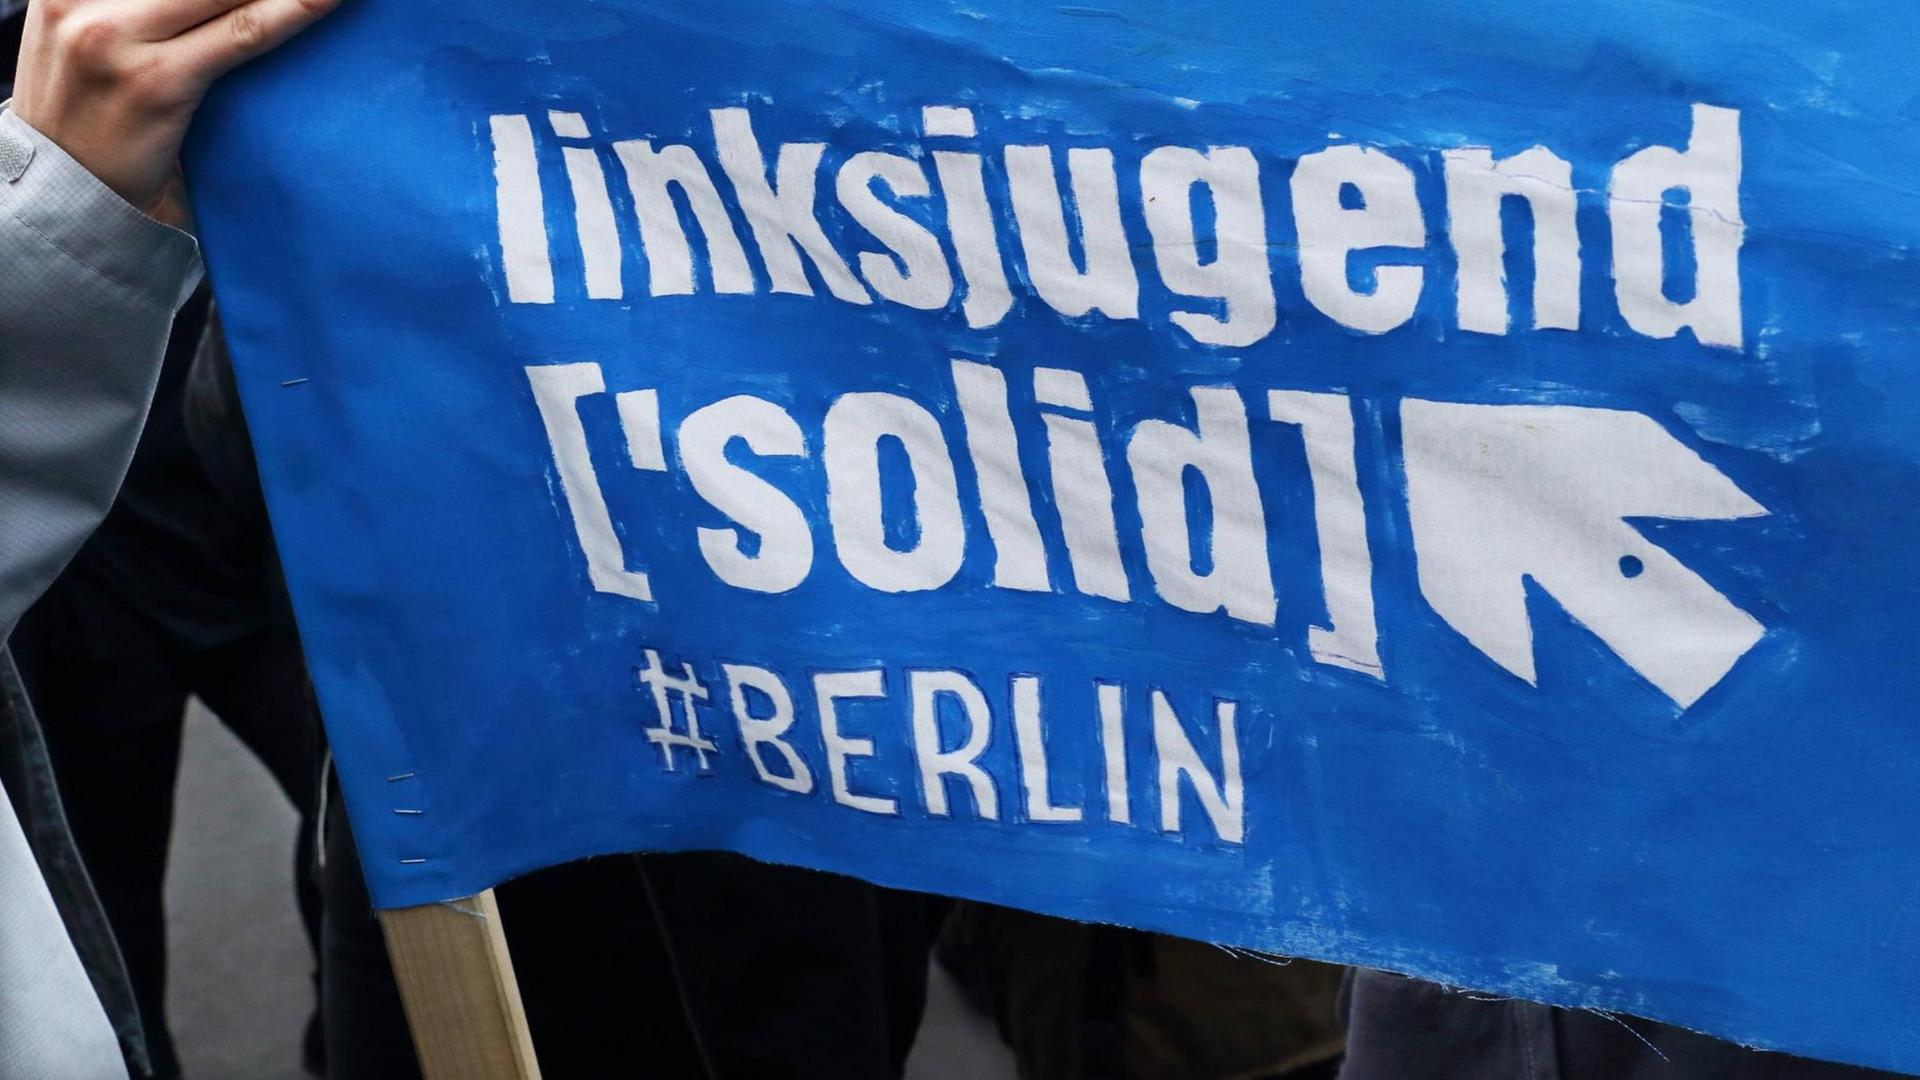 Transparent auf einer Demonstration mit dem Schriftzug "Linksjugend Solid Berlin".